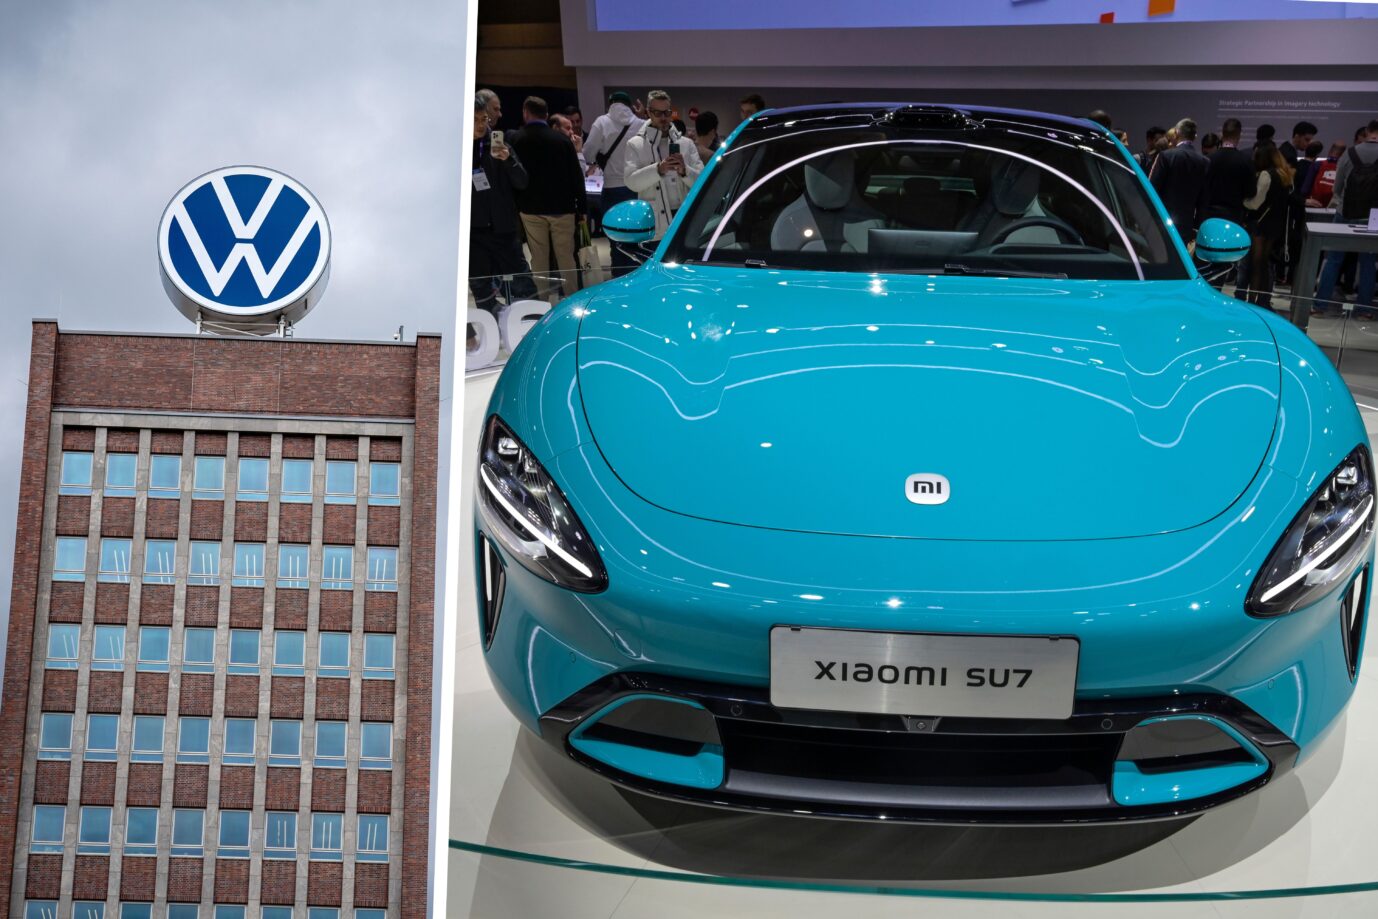 Das Volkswagenwerk in Wolfsburg und das E-Auto SU7 vom chinesischen Hersteller Xiaomi: Kampf um die Marktmacht.